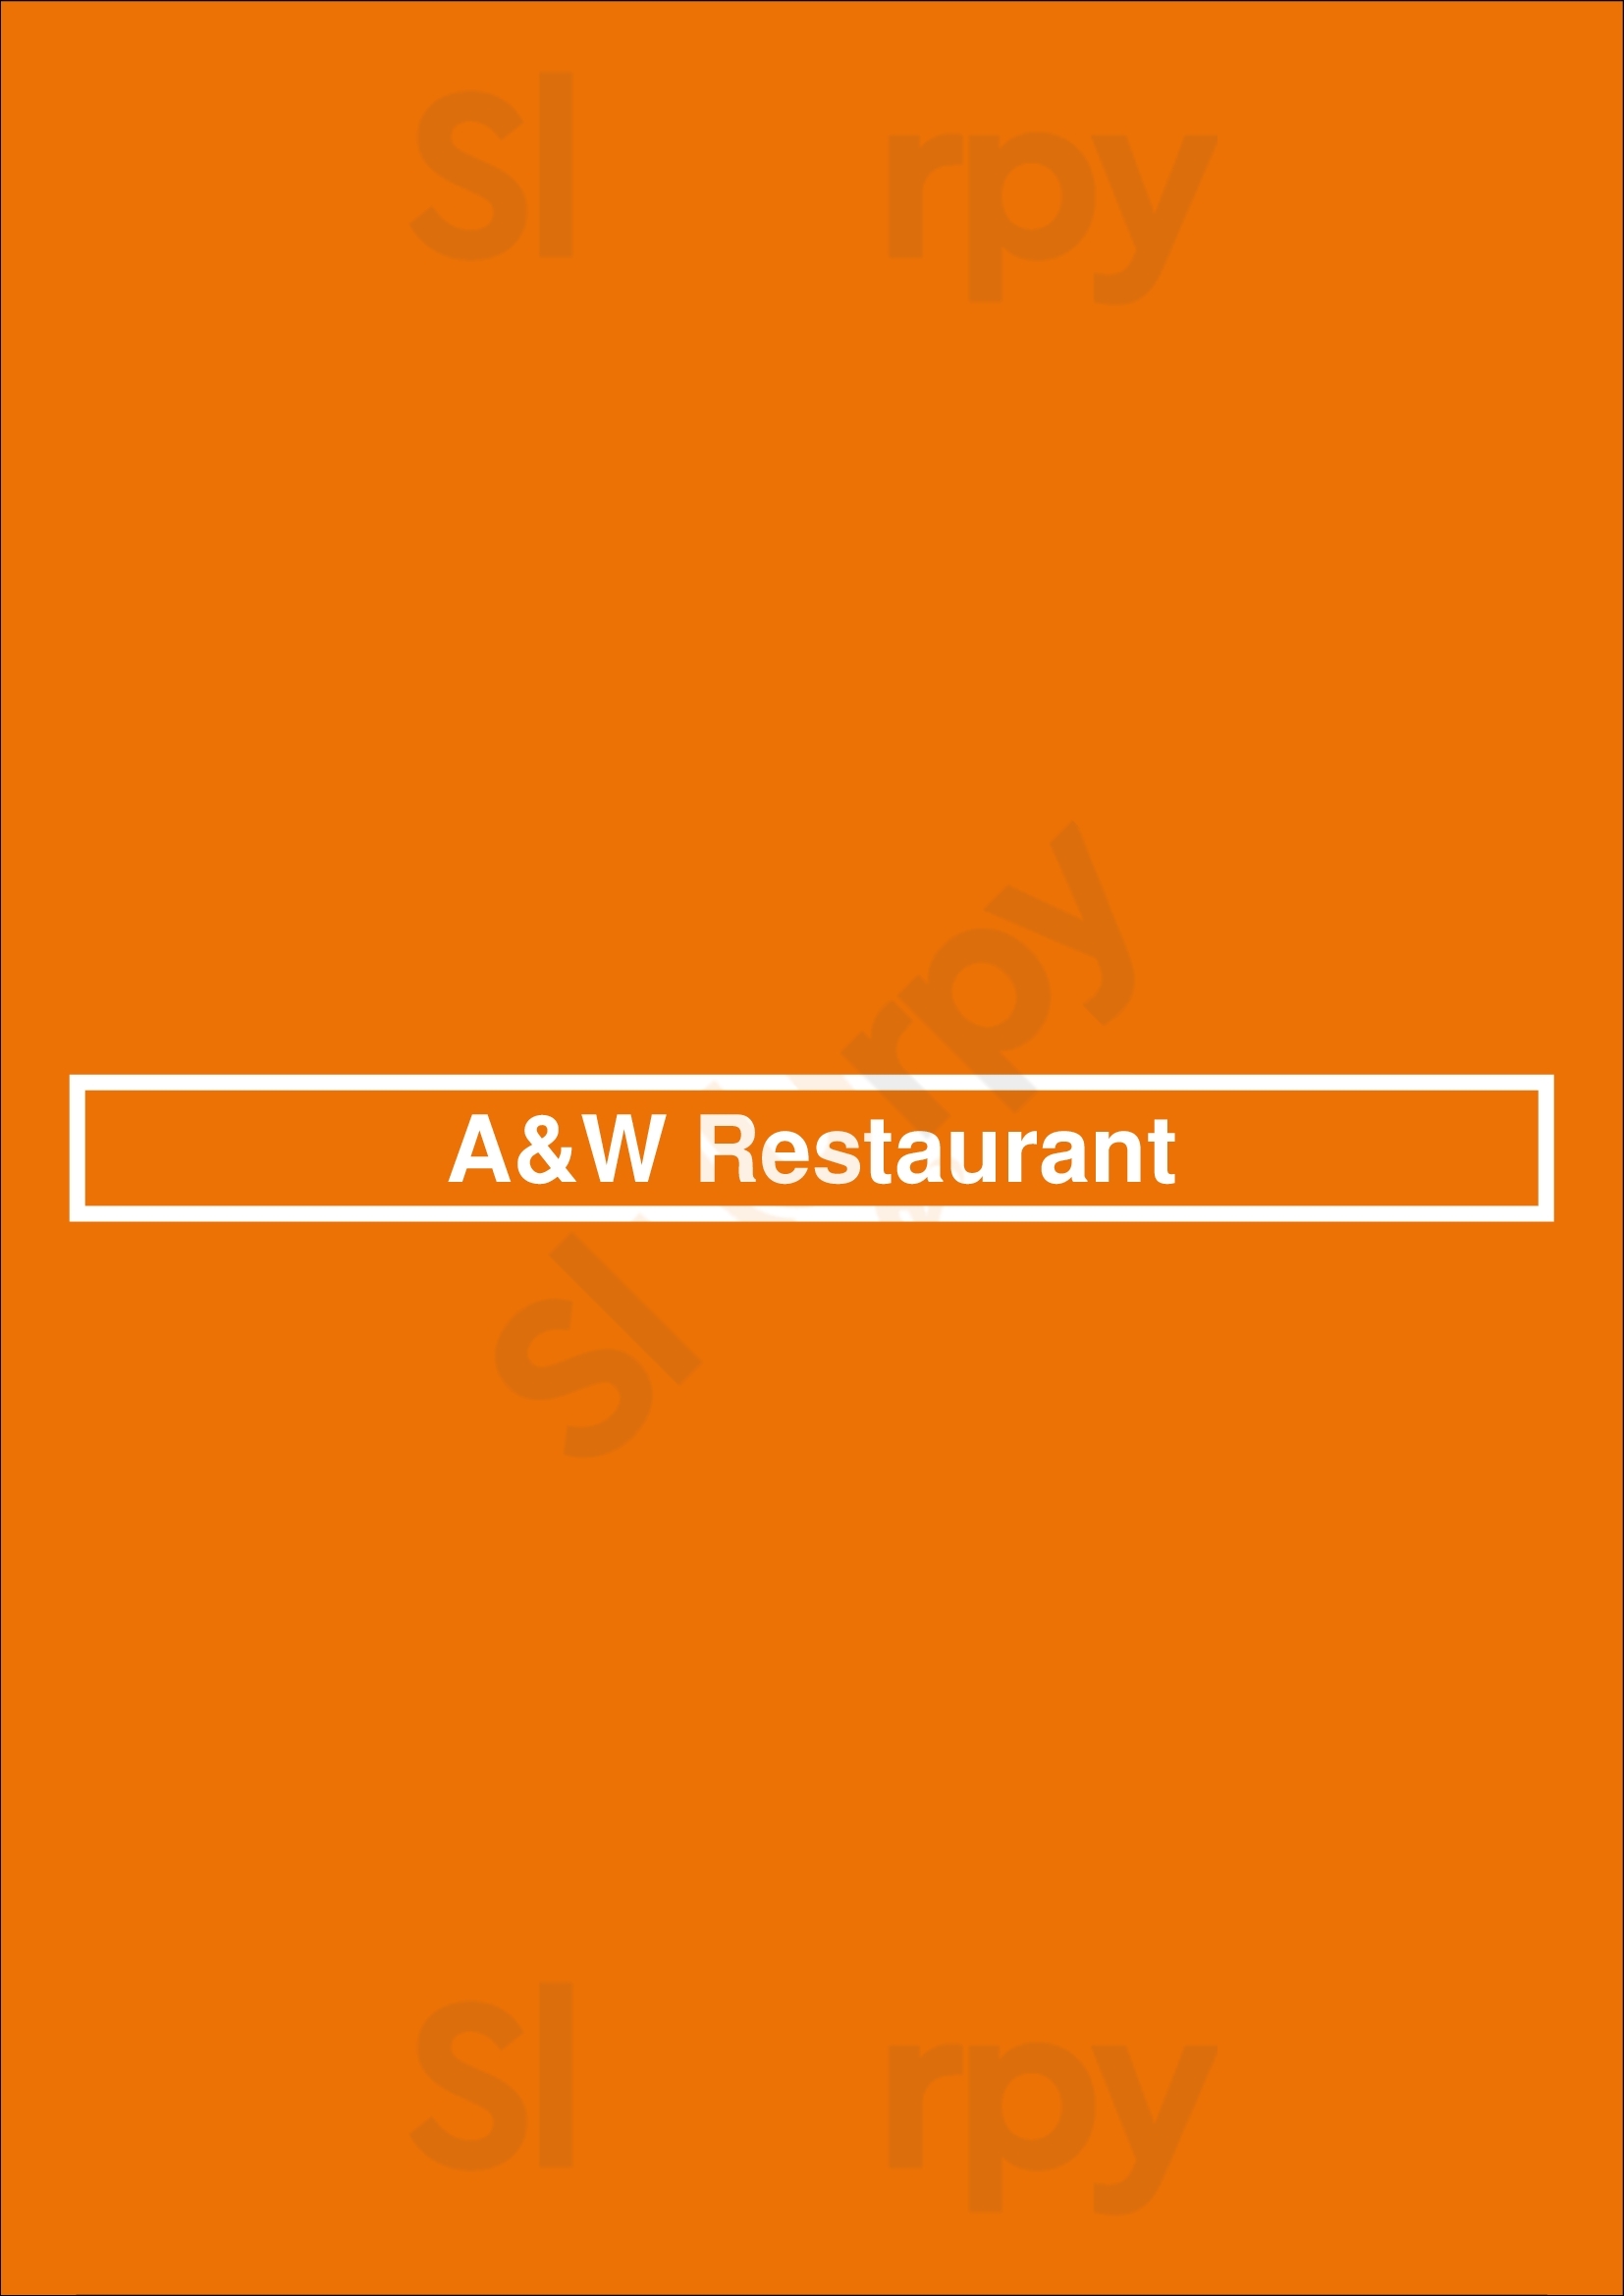 A&w Restaurant Toronto Menu - 1